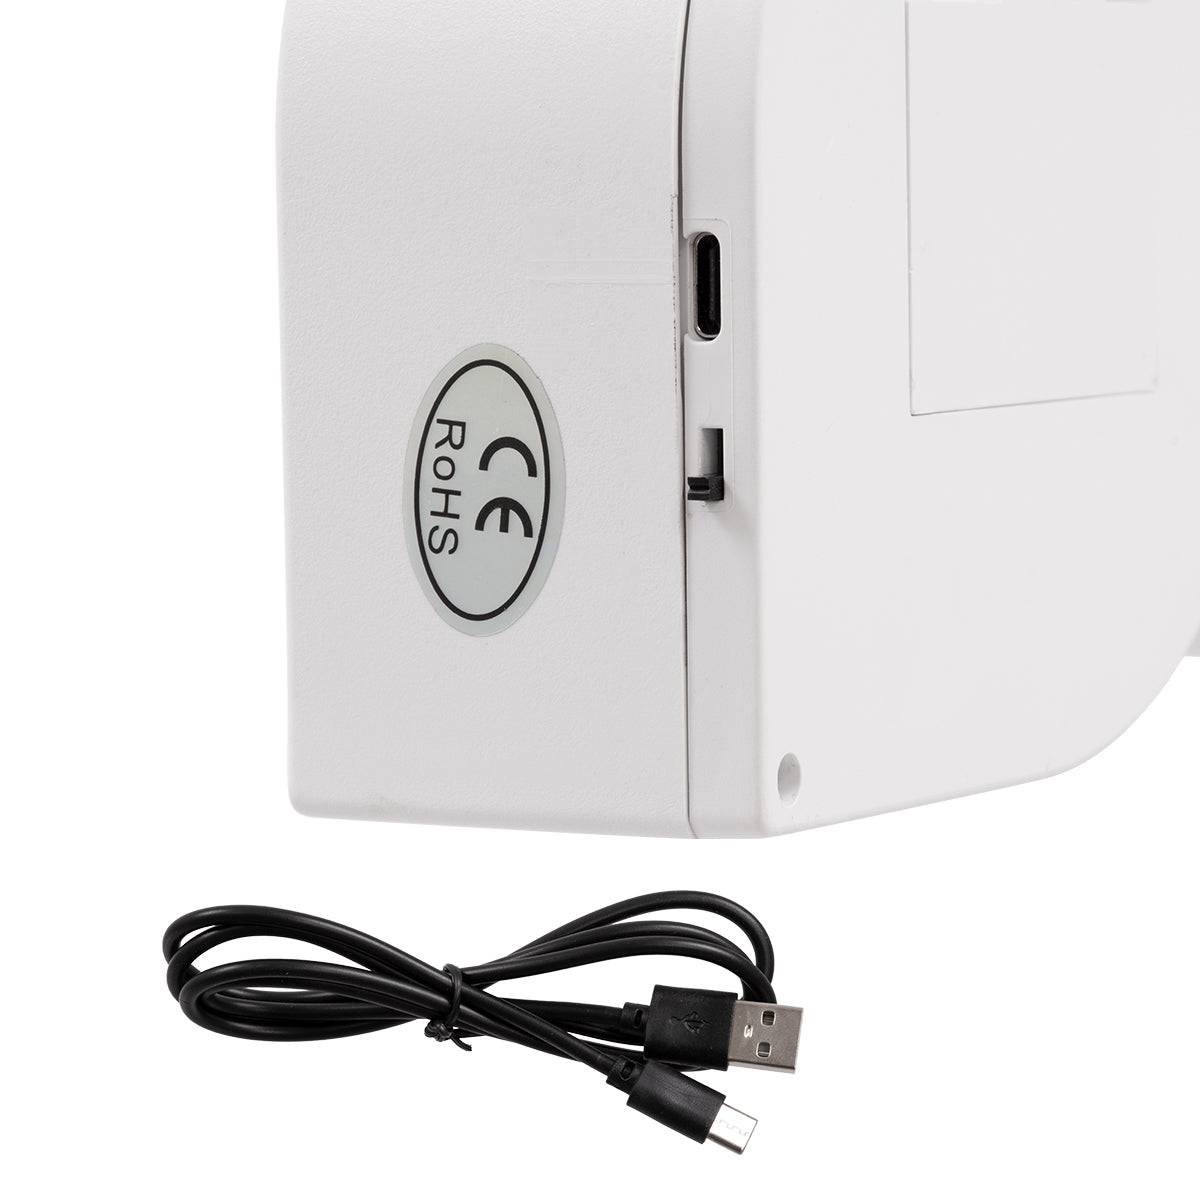 GloboStar® 76551 Μοντέρνο Επιτραπέζιο Διακοσμητικό Φωτιστικό LED Σήμανσης RAINBOW LOVE 2W με Διακόπτη On/Off & Καλώδιο Τροφοδοσίας USB - Μπαταρίας 3xAAA (Δεν Περιλαμβάνονται) Ψυχρό Λευκό 6000K - ledmania.gr